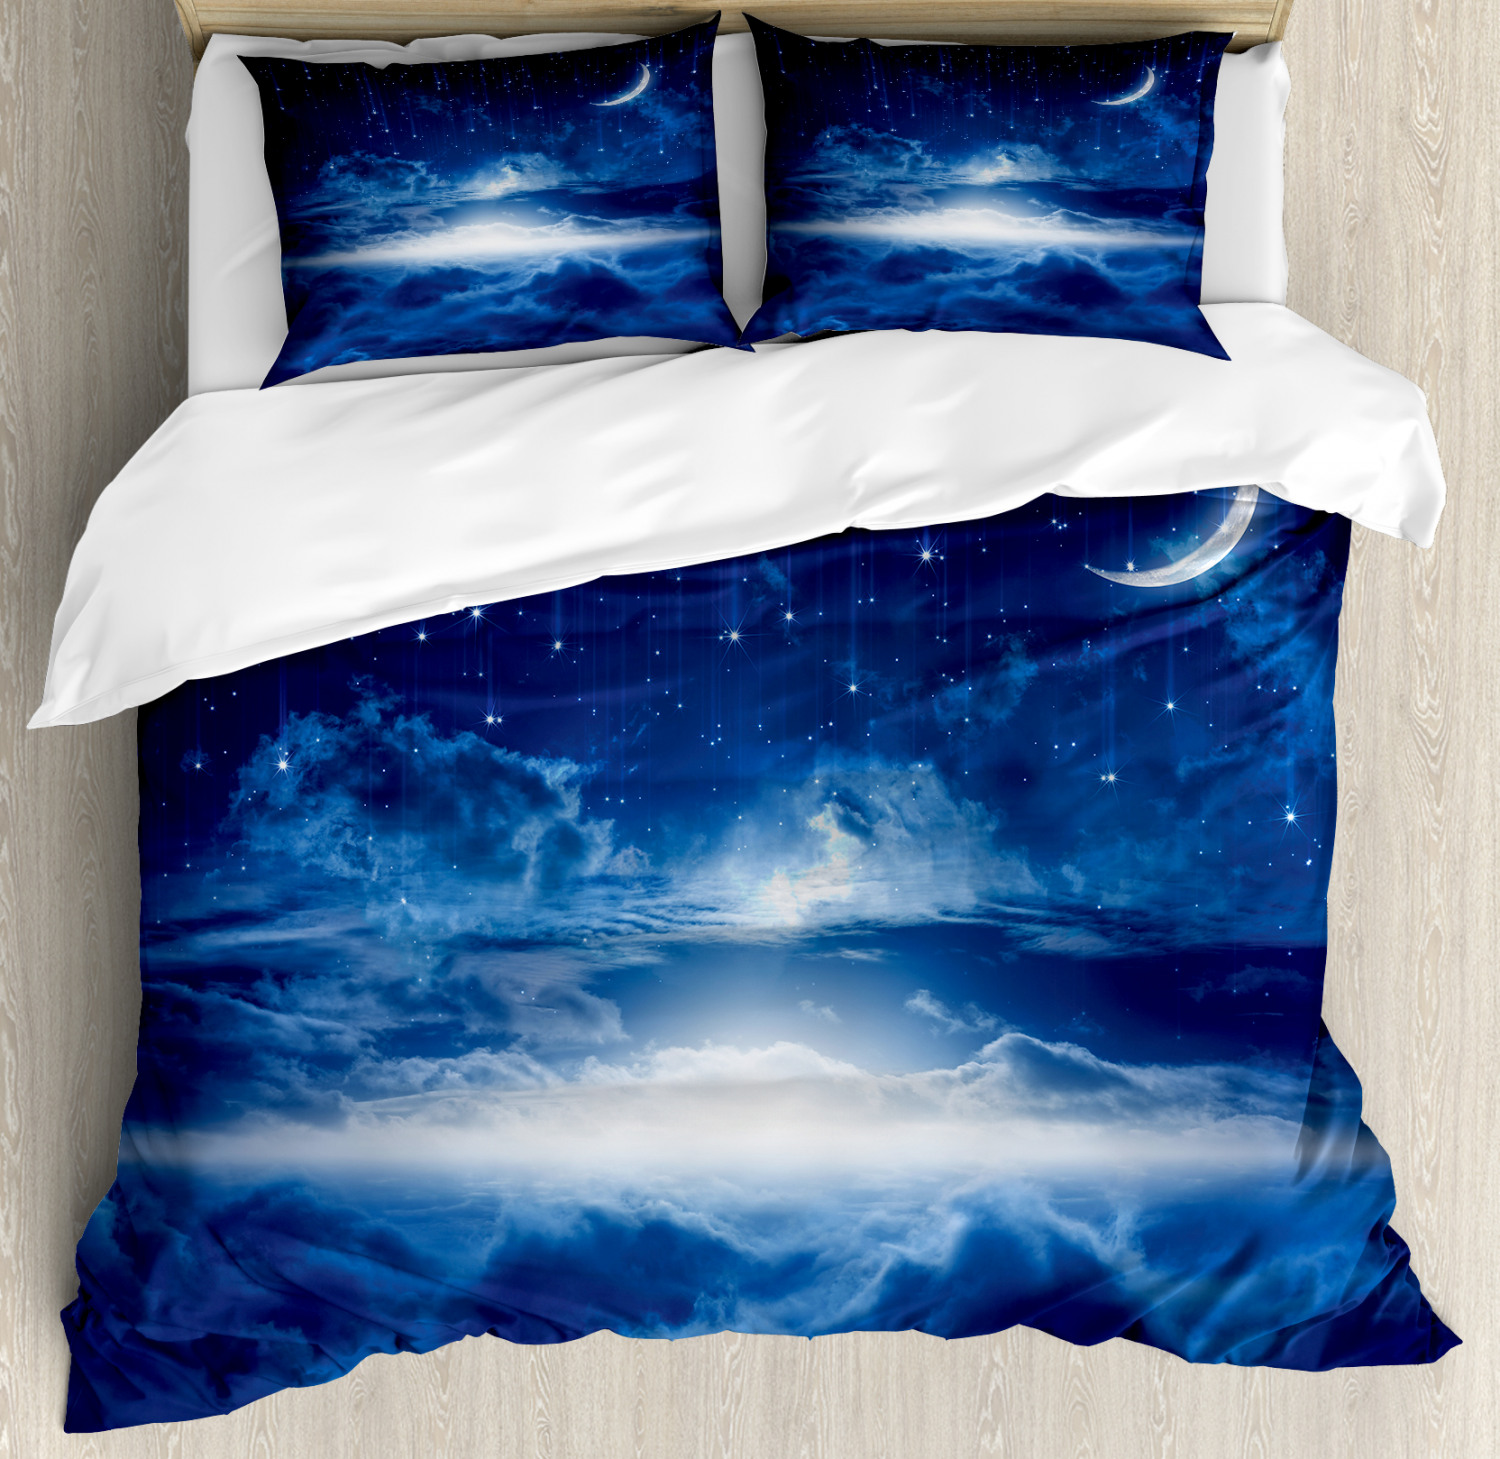 Blue White Duvet Cover Set With Pillow Shams Night Sky Moon Stars